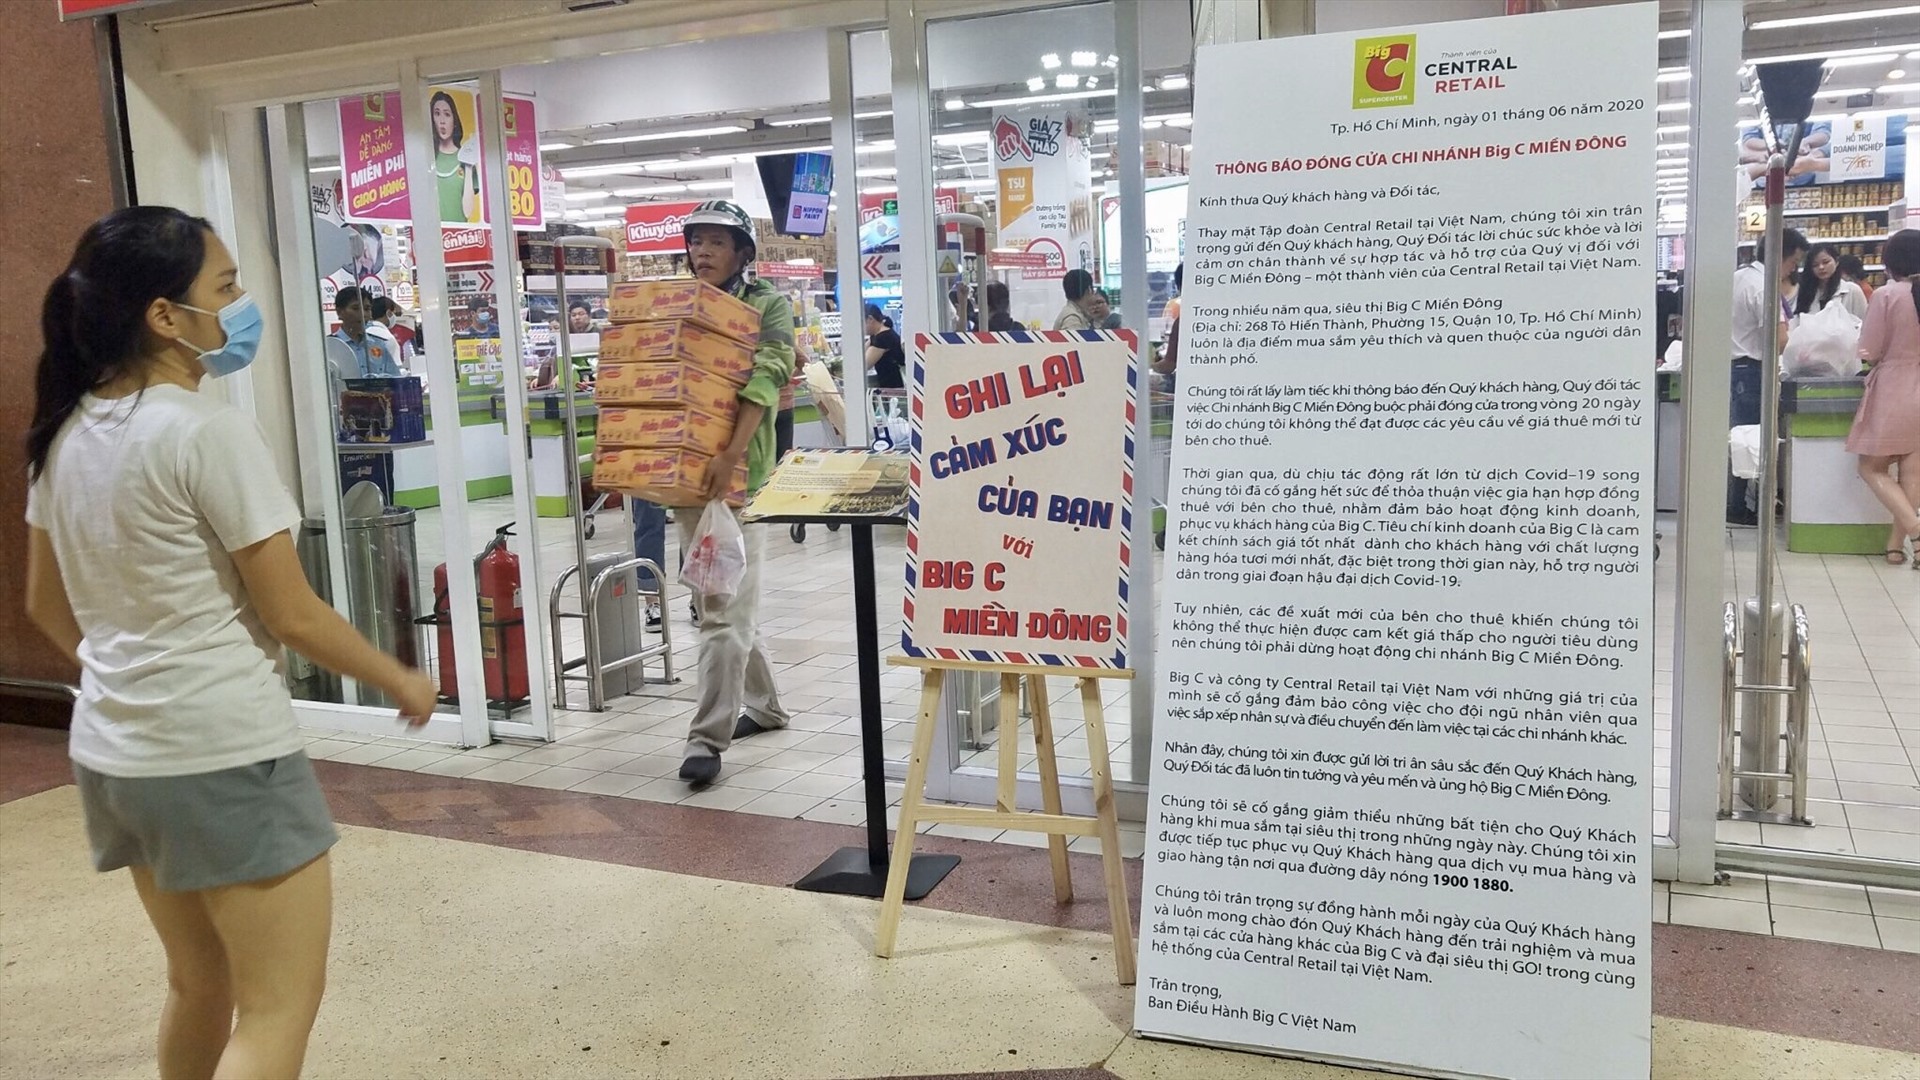 Theo thông báo của Central Retail - đơn vị quản lí hệ thống Big C tại Việt Nam, siêu thị Big C miền Đông nằm trên đường Tô Hiến Thành (quận 10, TP HCM) sẽ đóng cửa vào ngày 20/6 tới, do không thỏa thuận được giá mặt bằng của bên cho thuê.